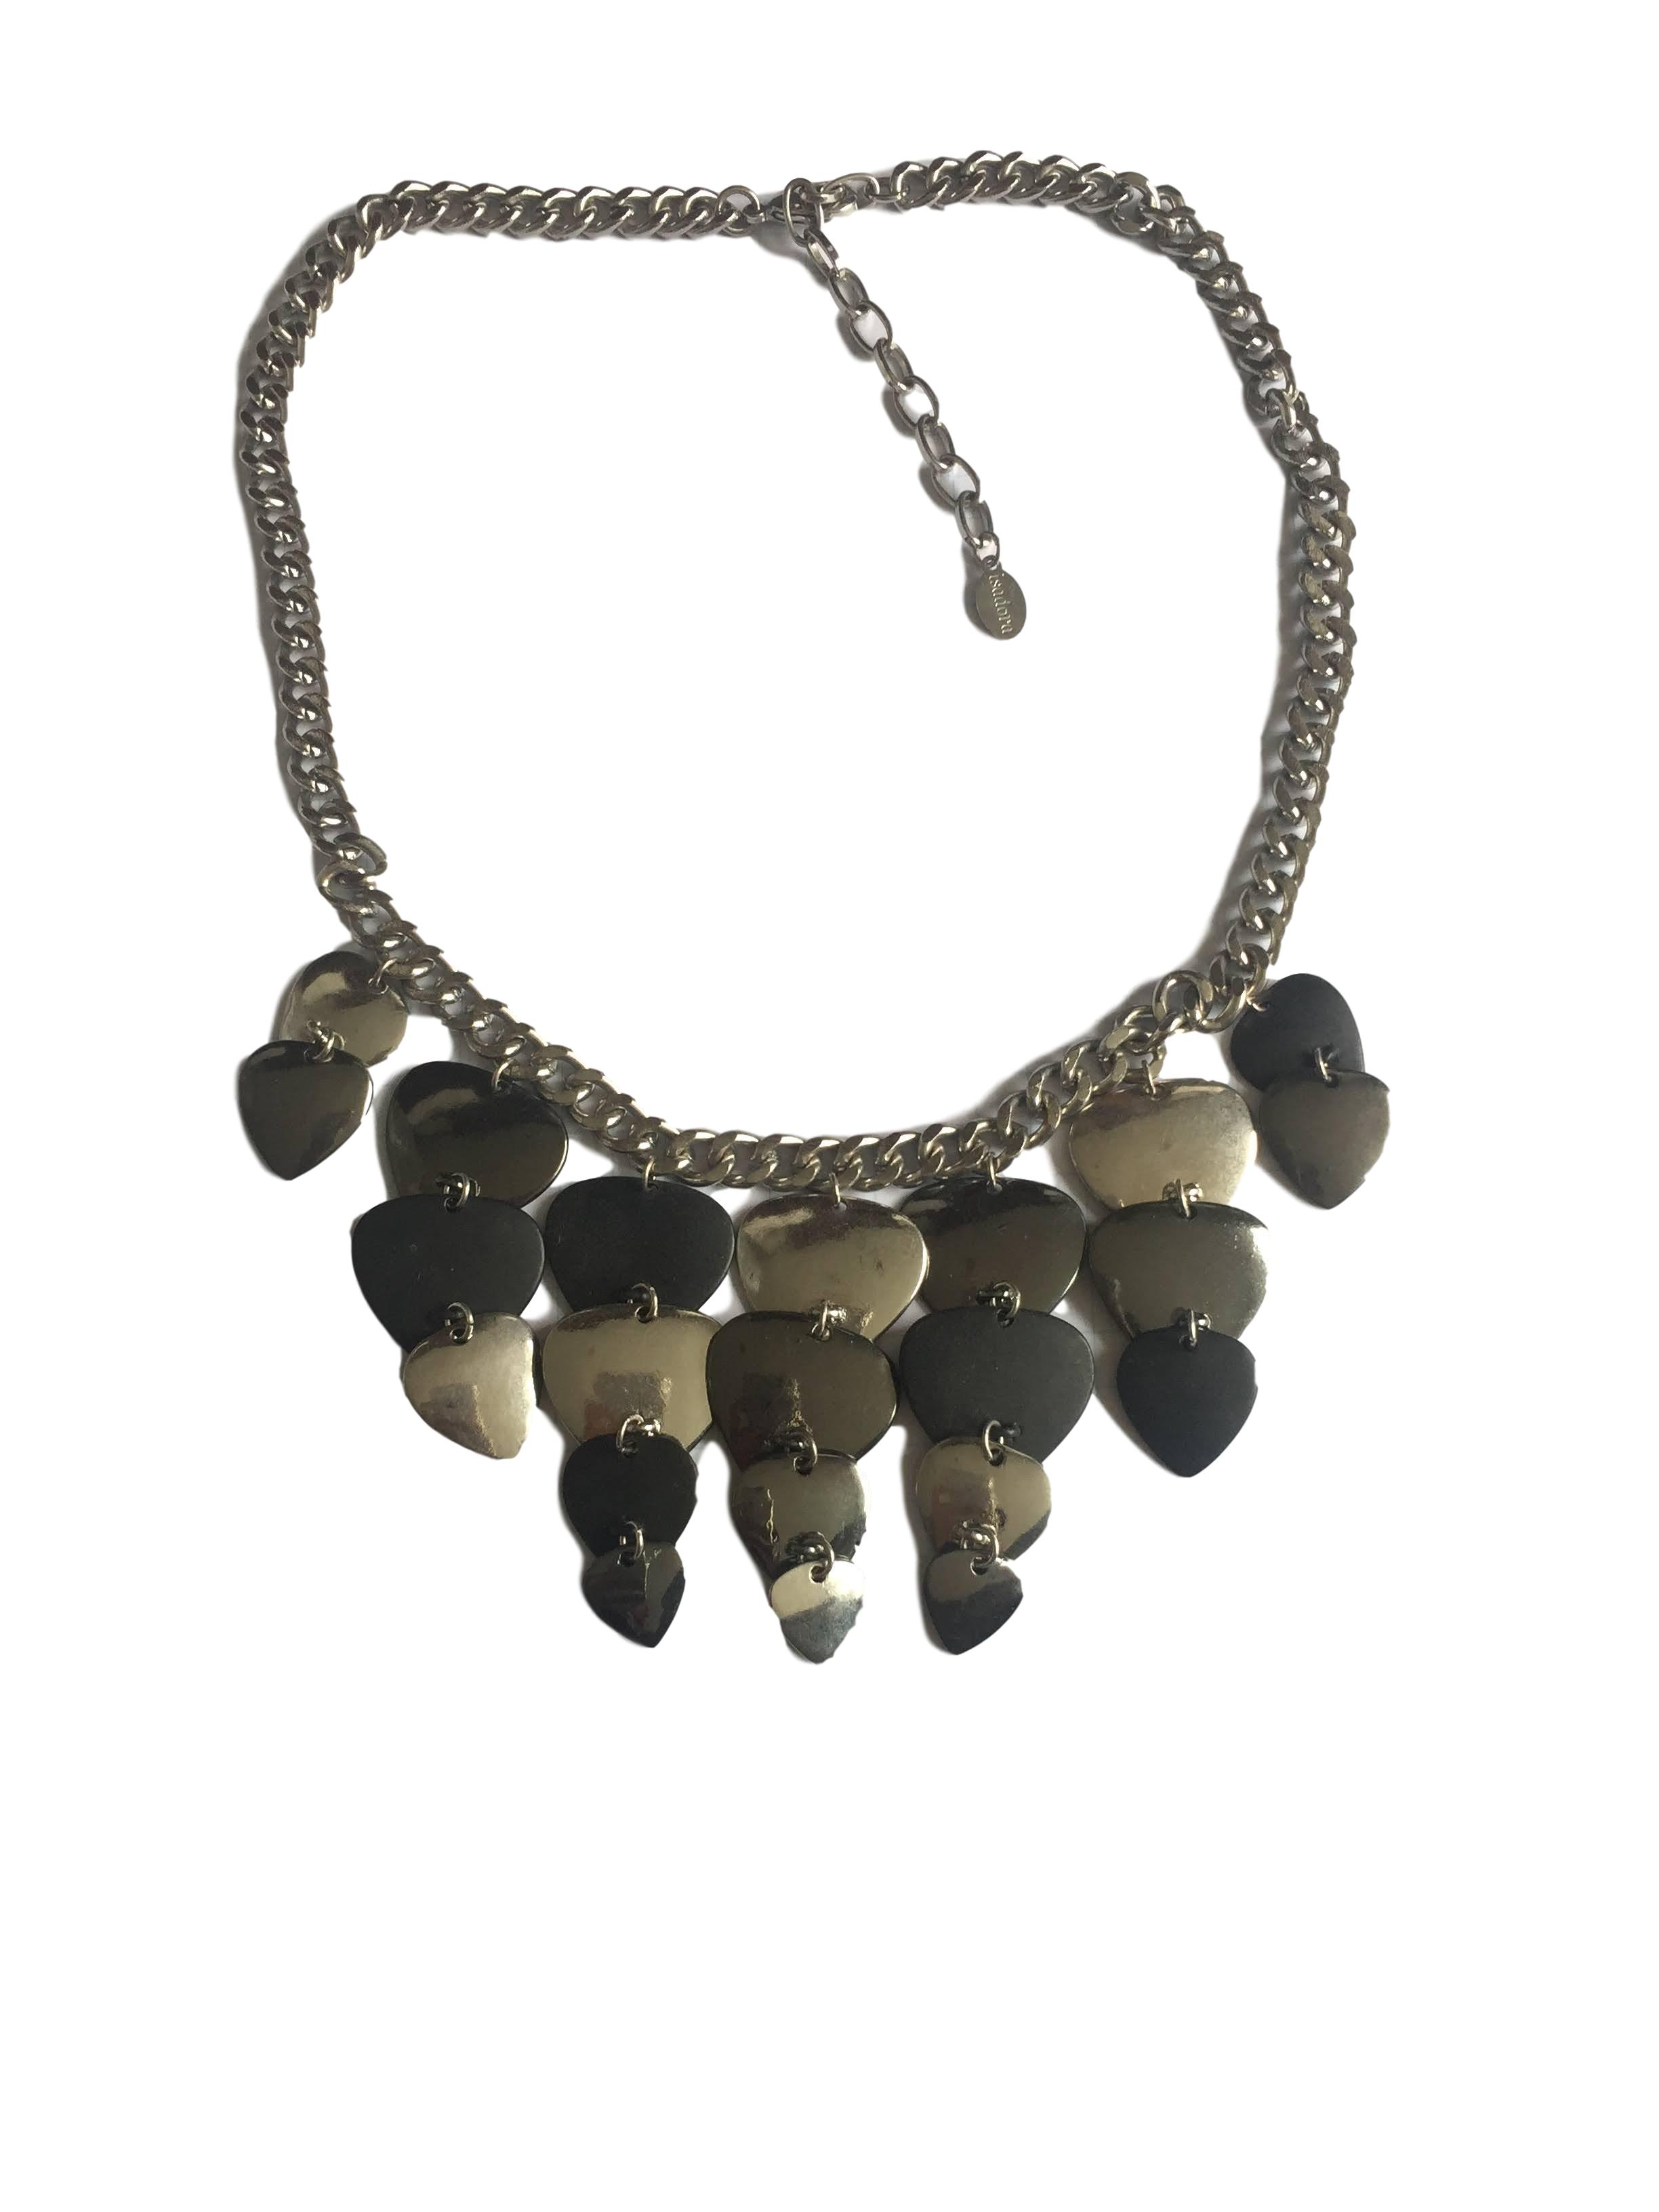 Collar Isadora cadena plateada con dijes colgantes negros y plateados. Circunferencia 46cm